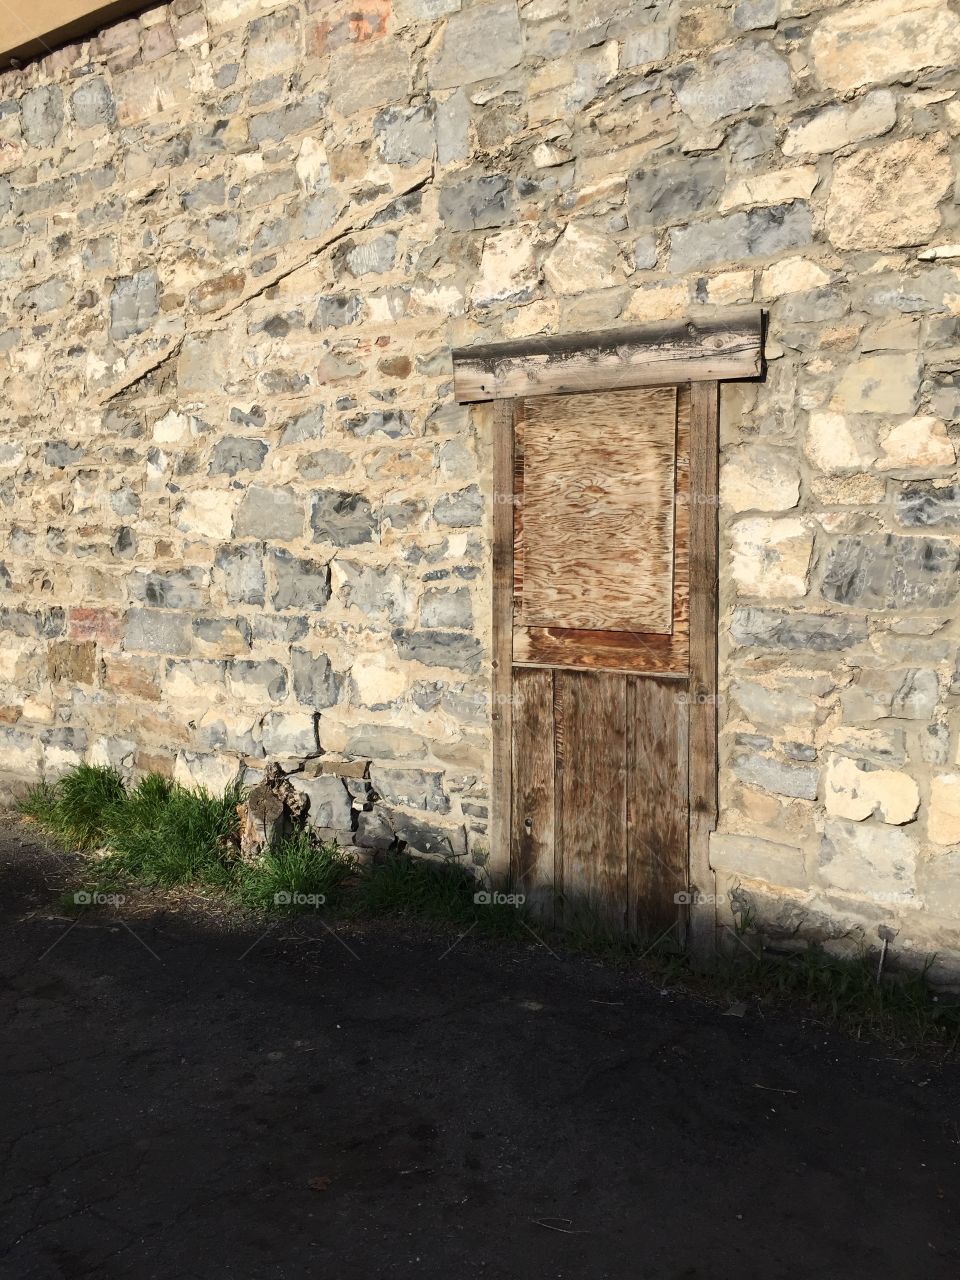 Wooden Door in Rock Wall